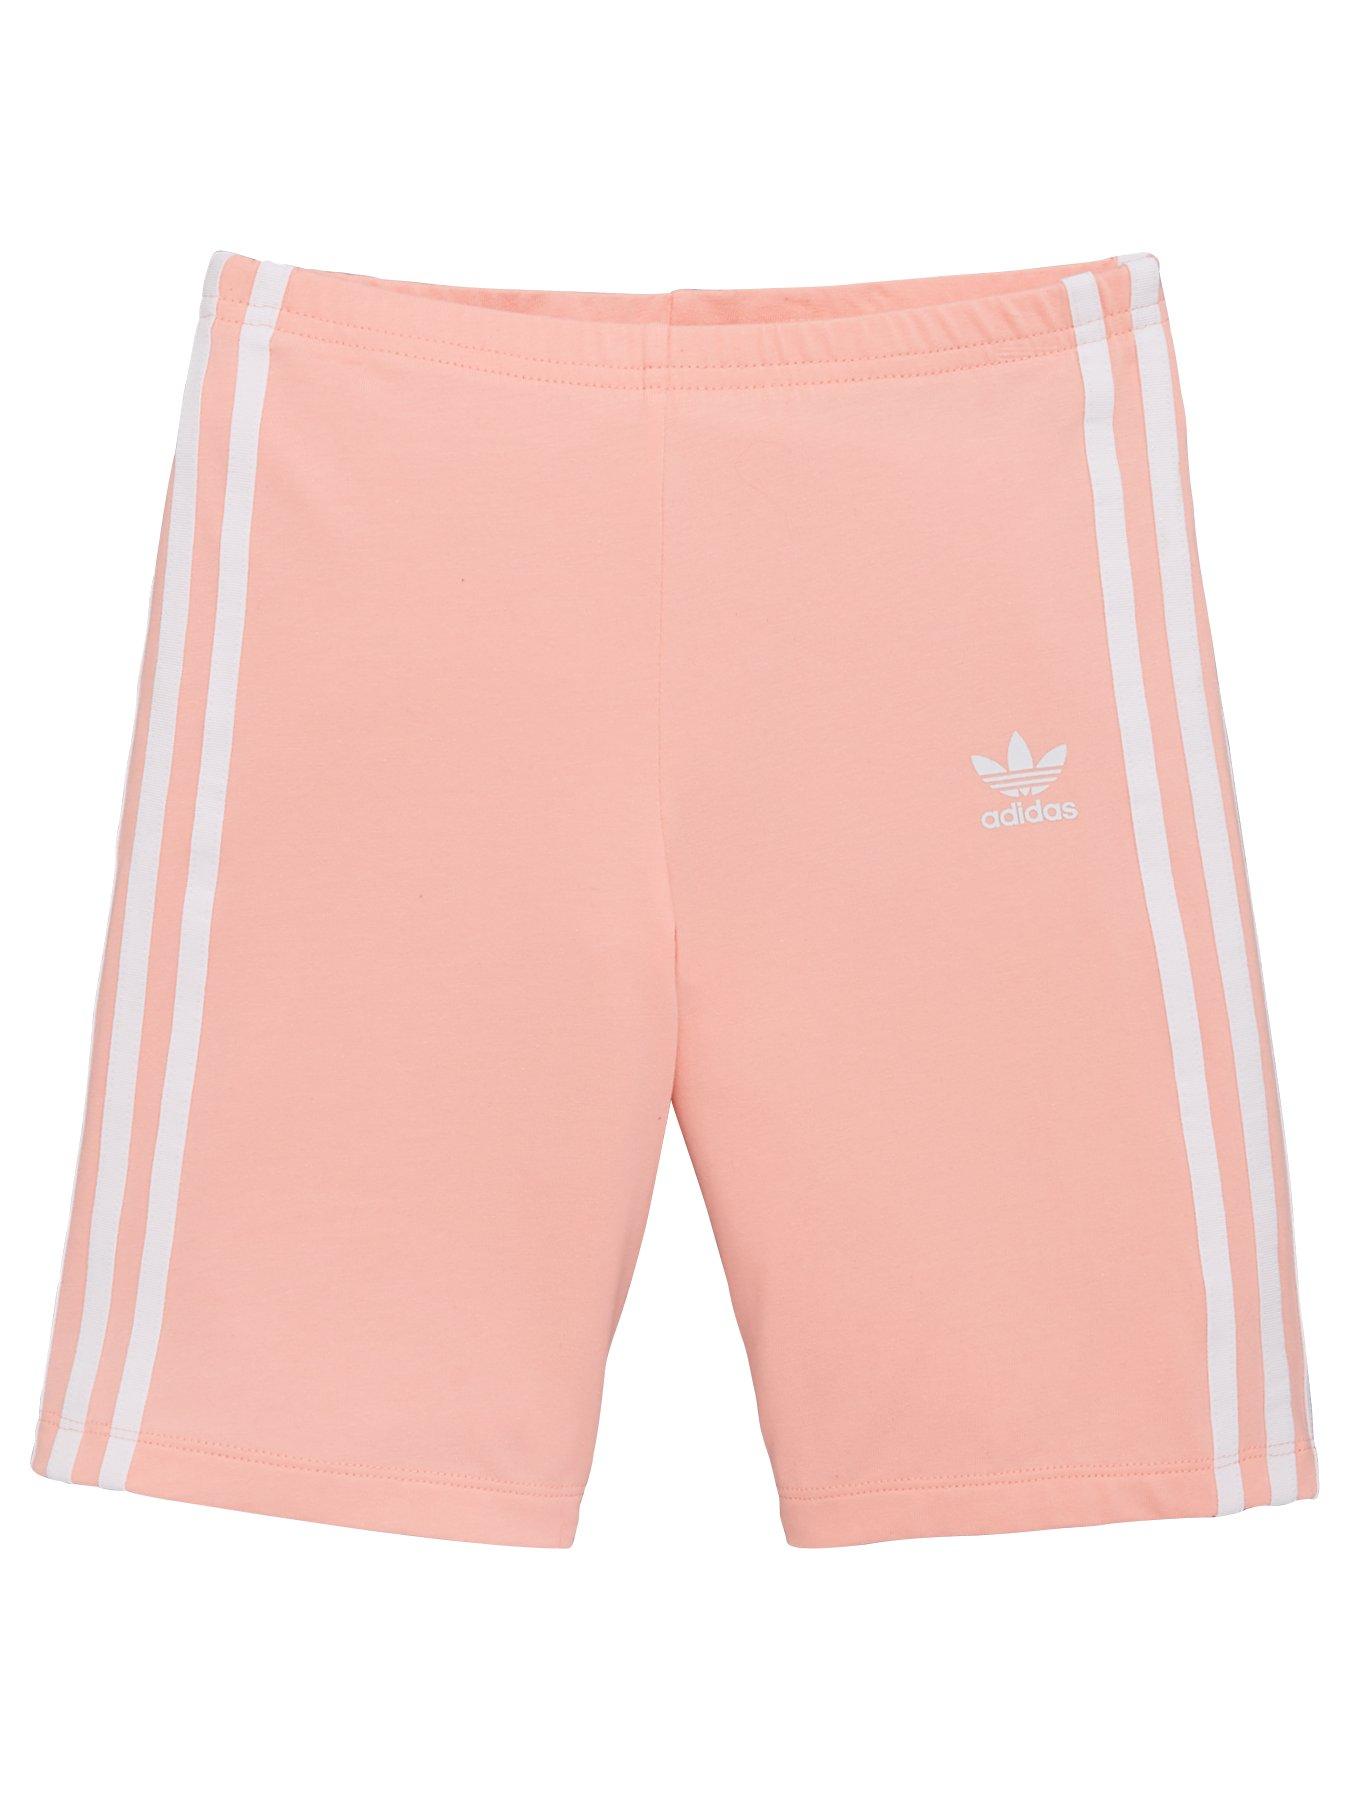 adidas cycling shorts pink